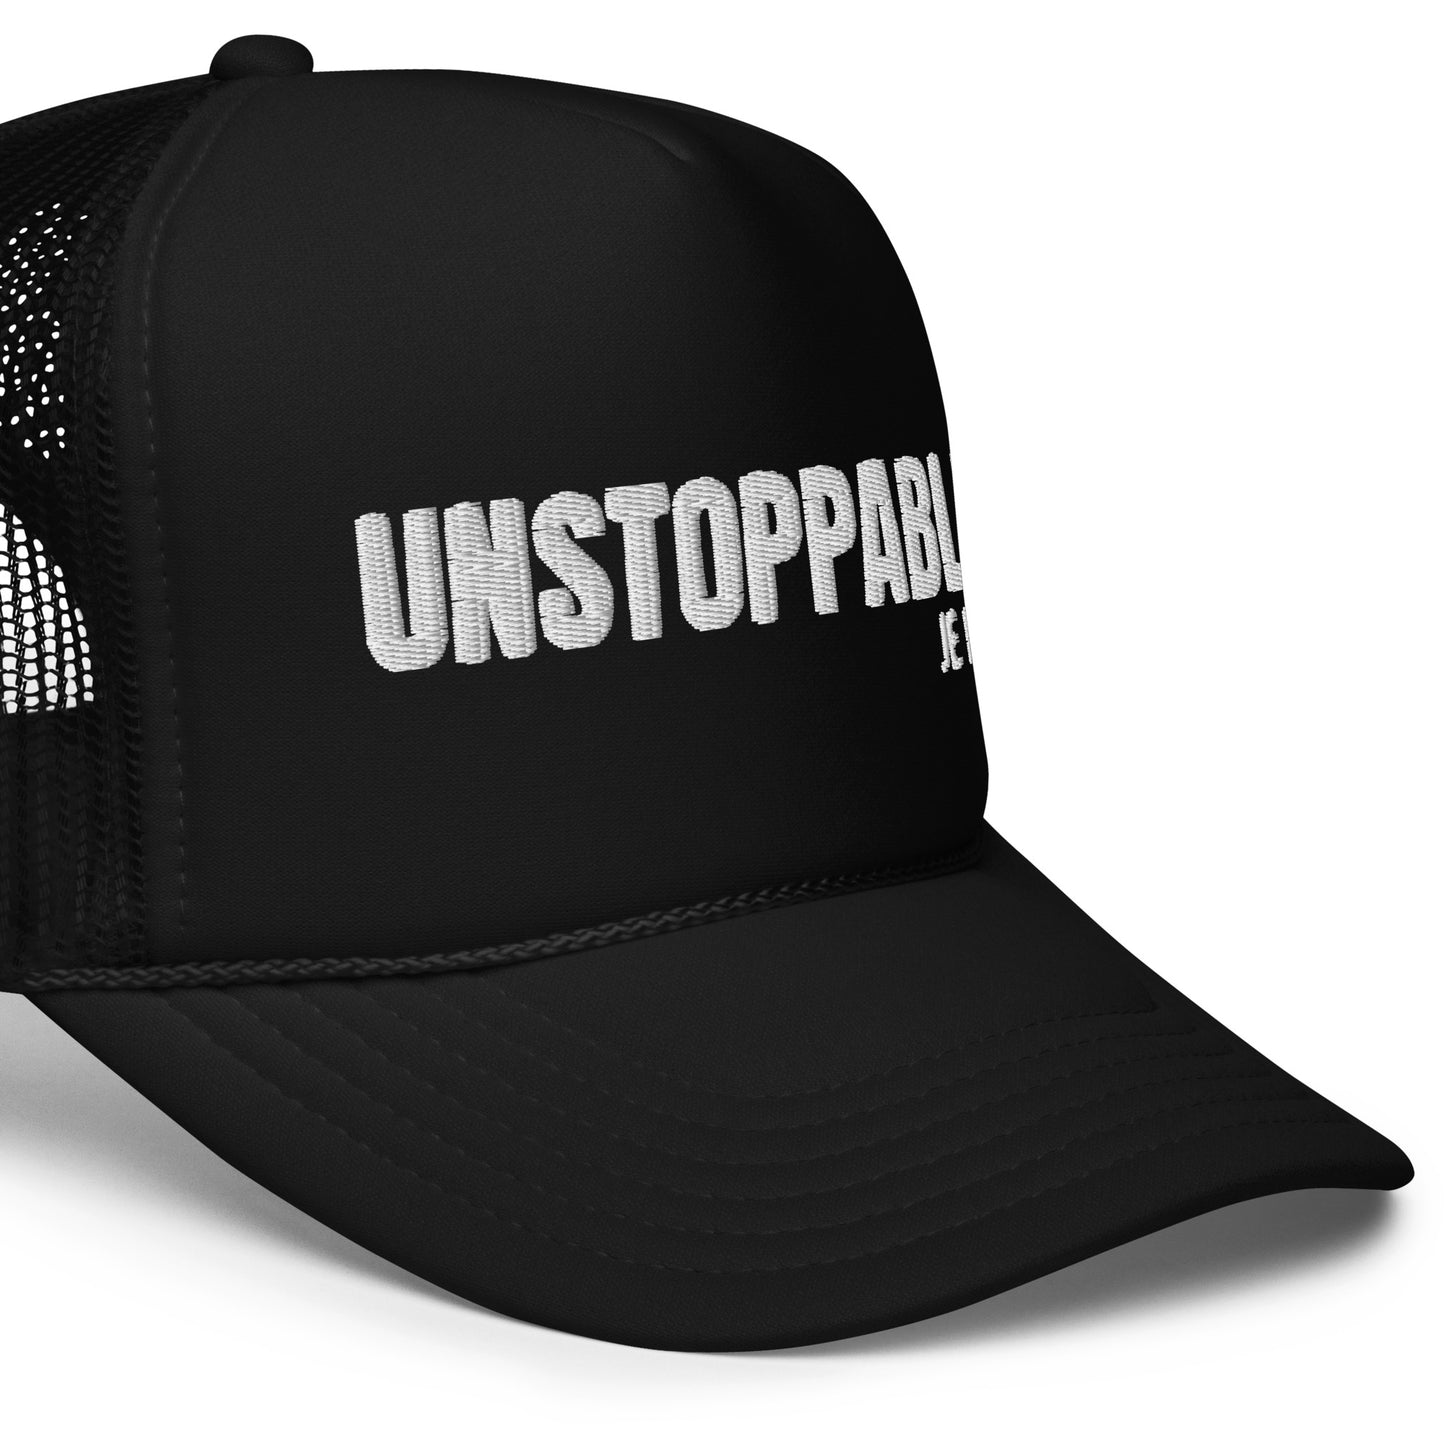 Unstoppable  trucker hat